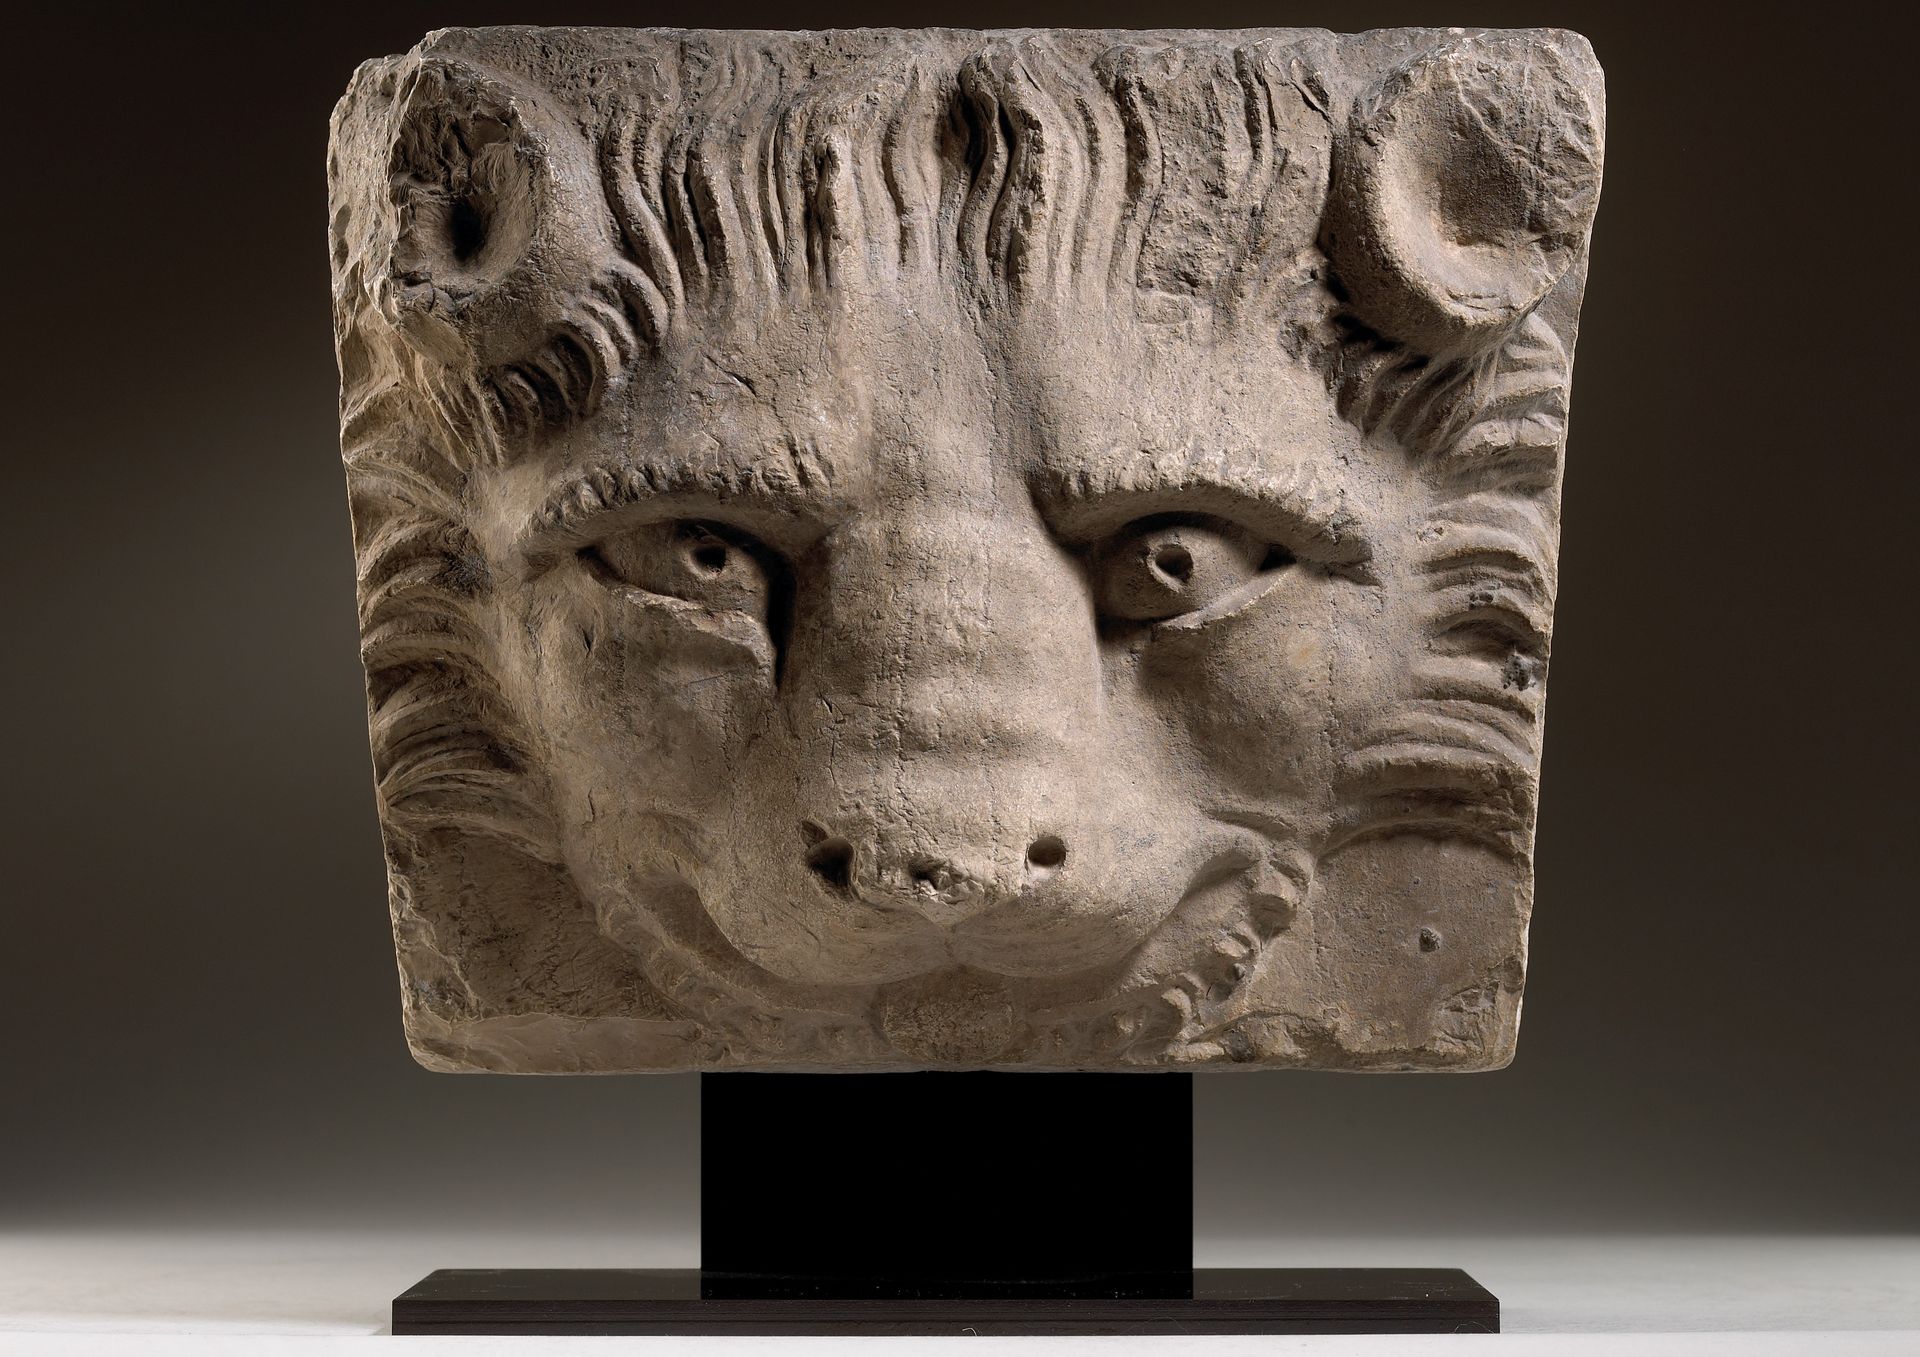 Null 狮头基石

意大利，威尼斯，15世纪

石灰岩

24 x 30 x 12厘米



猫科动物的头部是以一种风格化的方式表现的，有一双大眼睛，瞳孔很深&hellip;